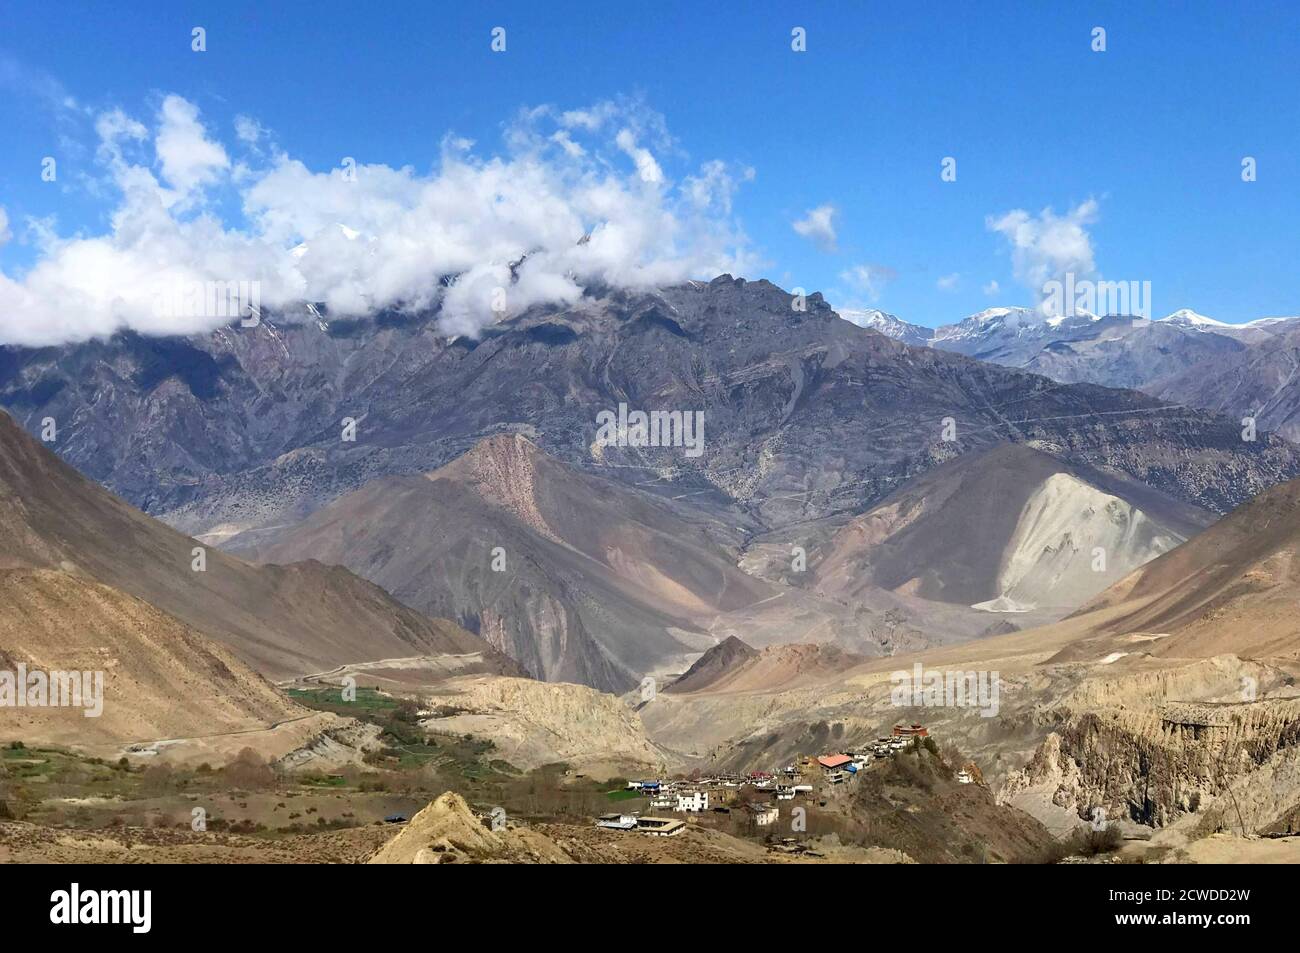 Impressionante paesaggio himalayano nel regno di Mustang, Nepal. Incredibile natura montagnosa. Paesaggio panoramico sulla catena montuosa di Dhaulagiri. Himalaya mozzafiato. Foto Stock